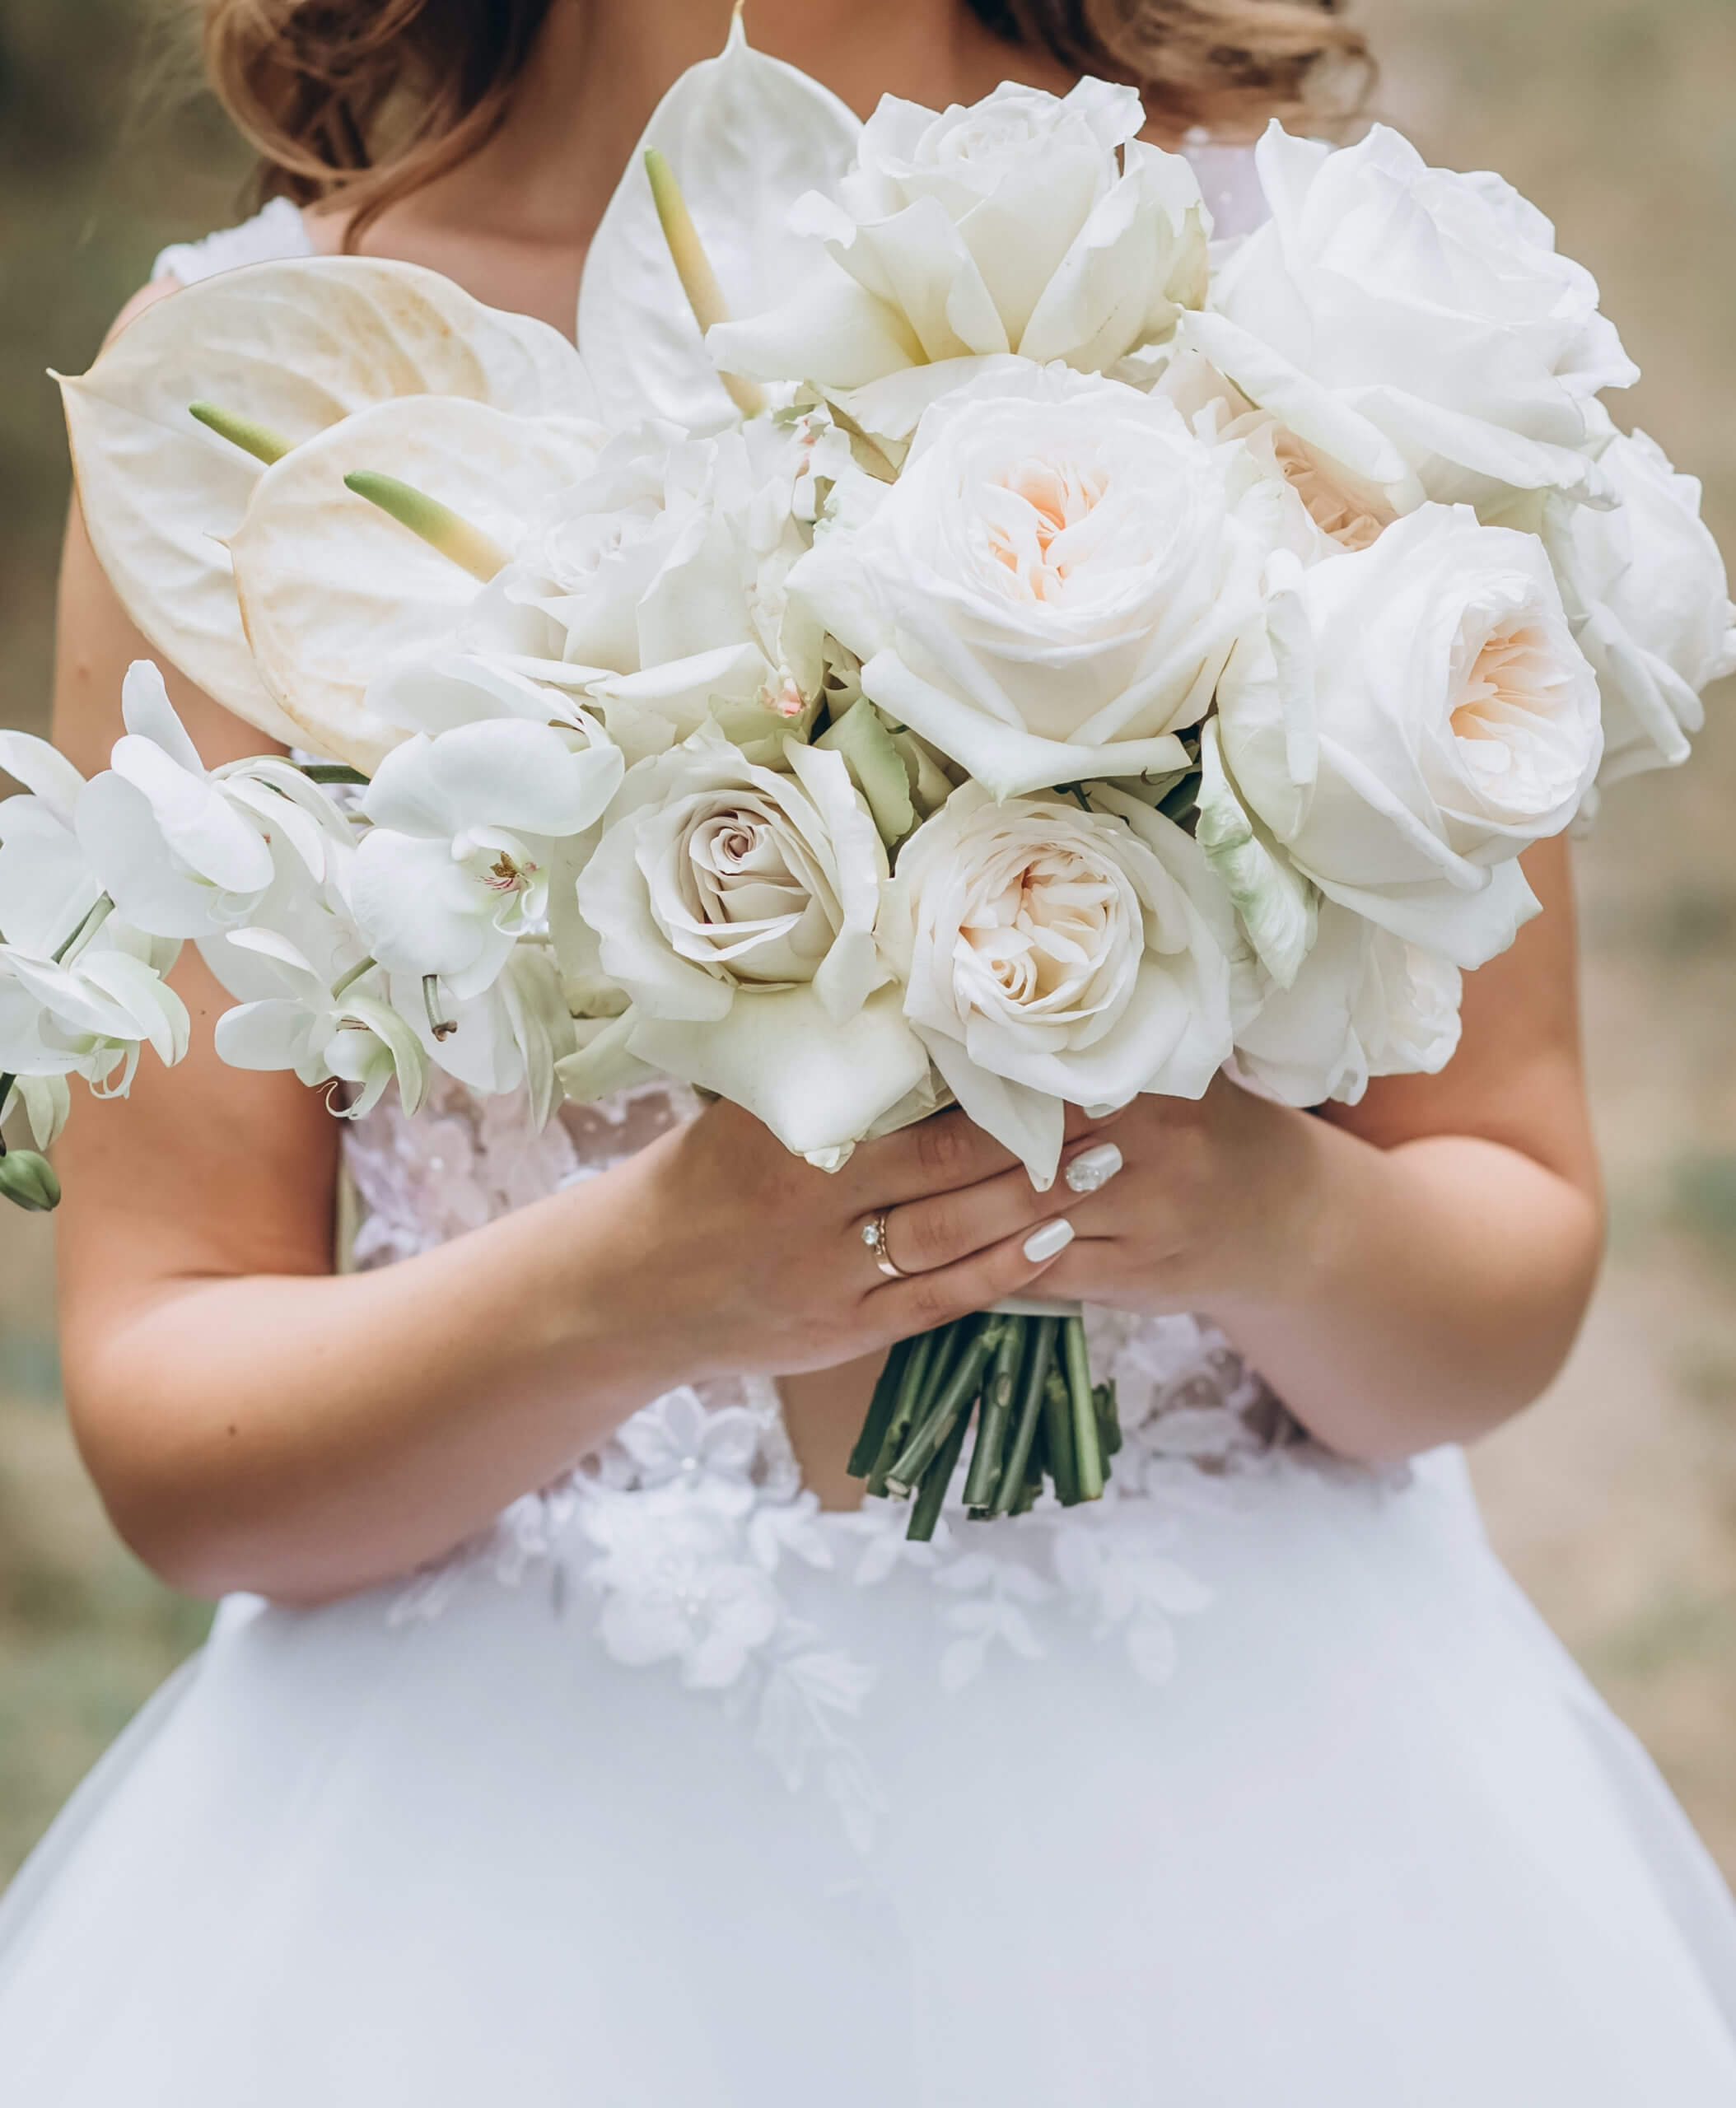 Brautstrauß in Weiß mit Rosen und Anthurien